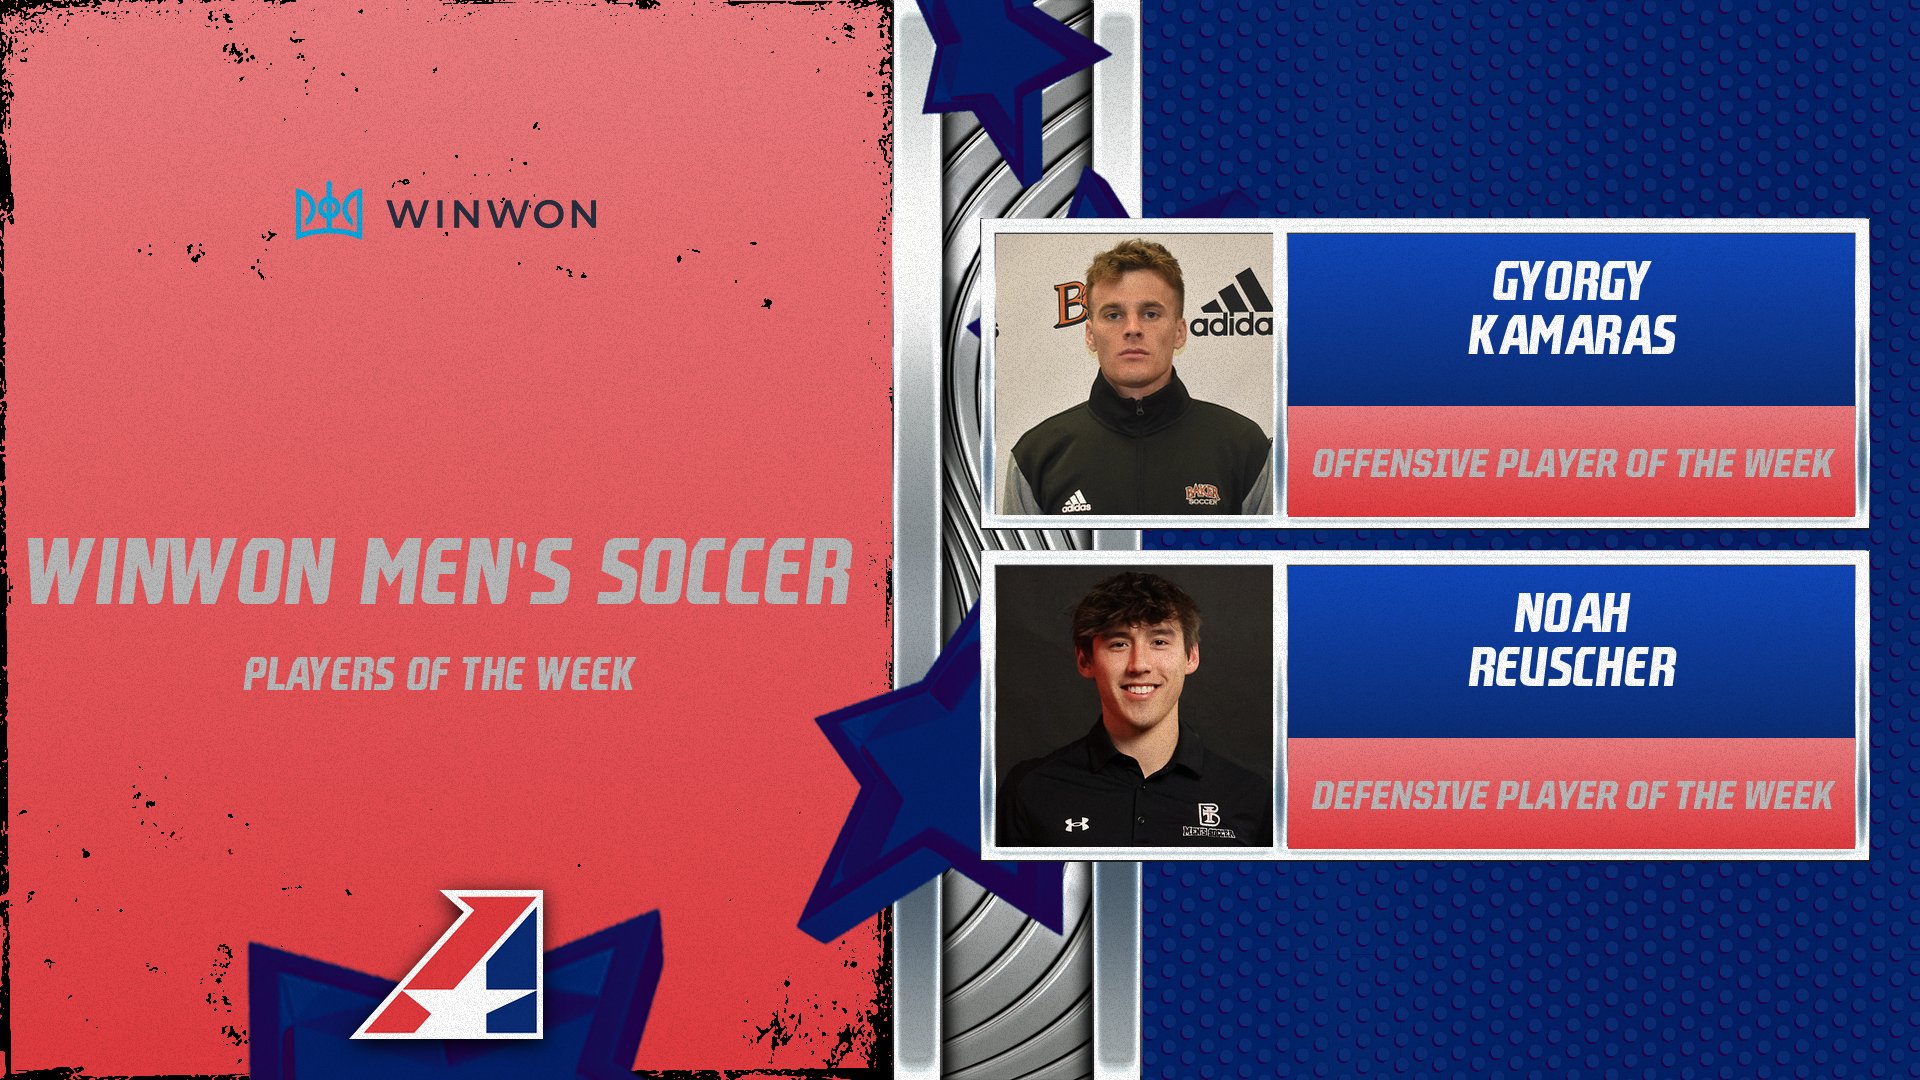 Kamaras, Reuscher Capture WinWon Men’s Soccer Player of the Week Awards